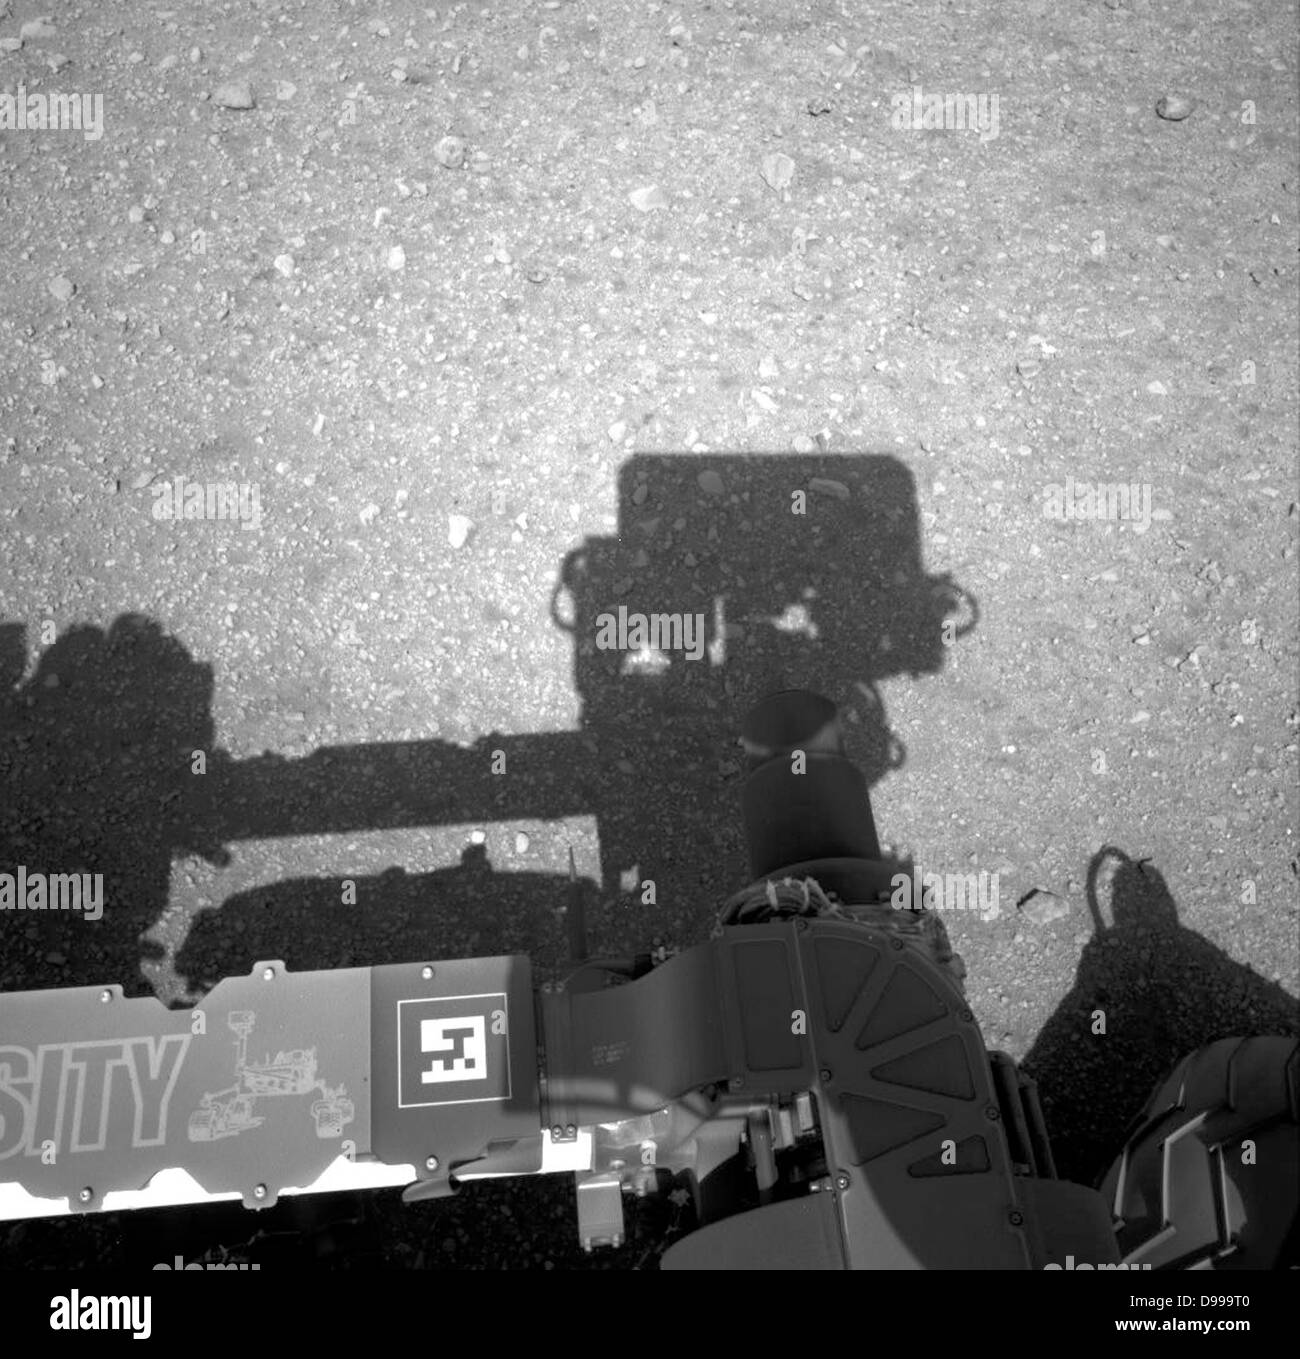 Dies ist das erste Bild von der Navigation Kameras auf der NASA-Rover Curiosity. Es zeigt die Schatten der Rover nun - aufrecht Mast in der Mitte, und den Schatten der Arm auf der linken Seite. Stockfoto